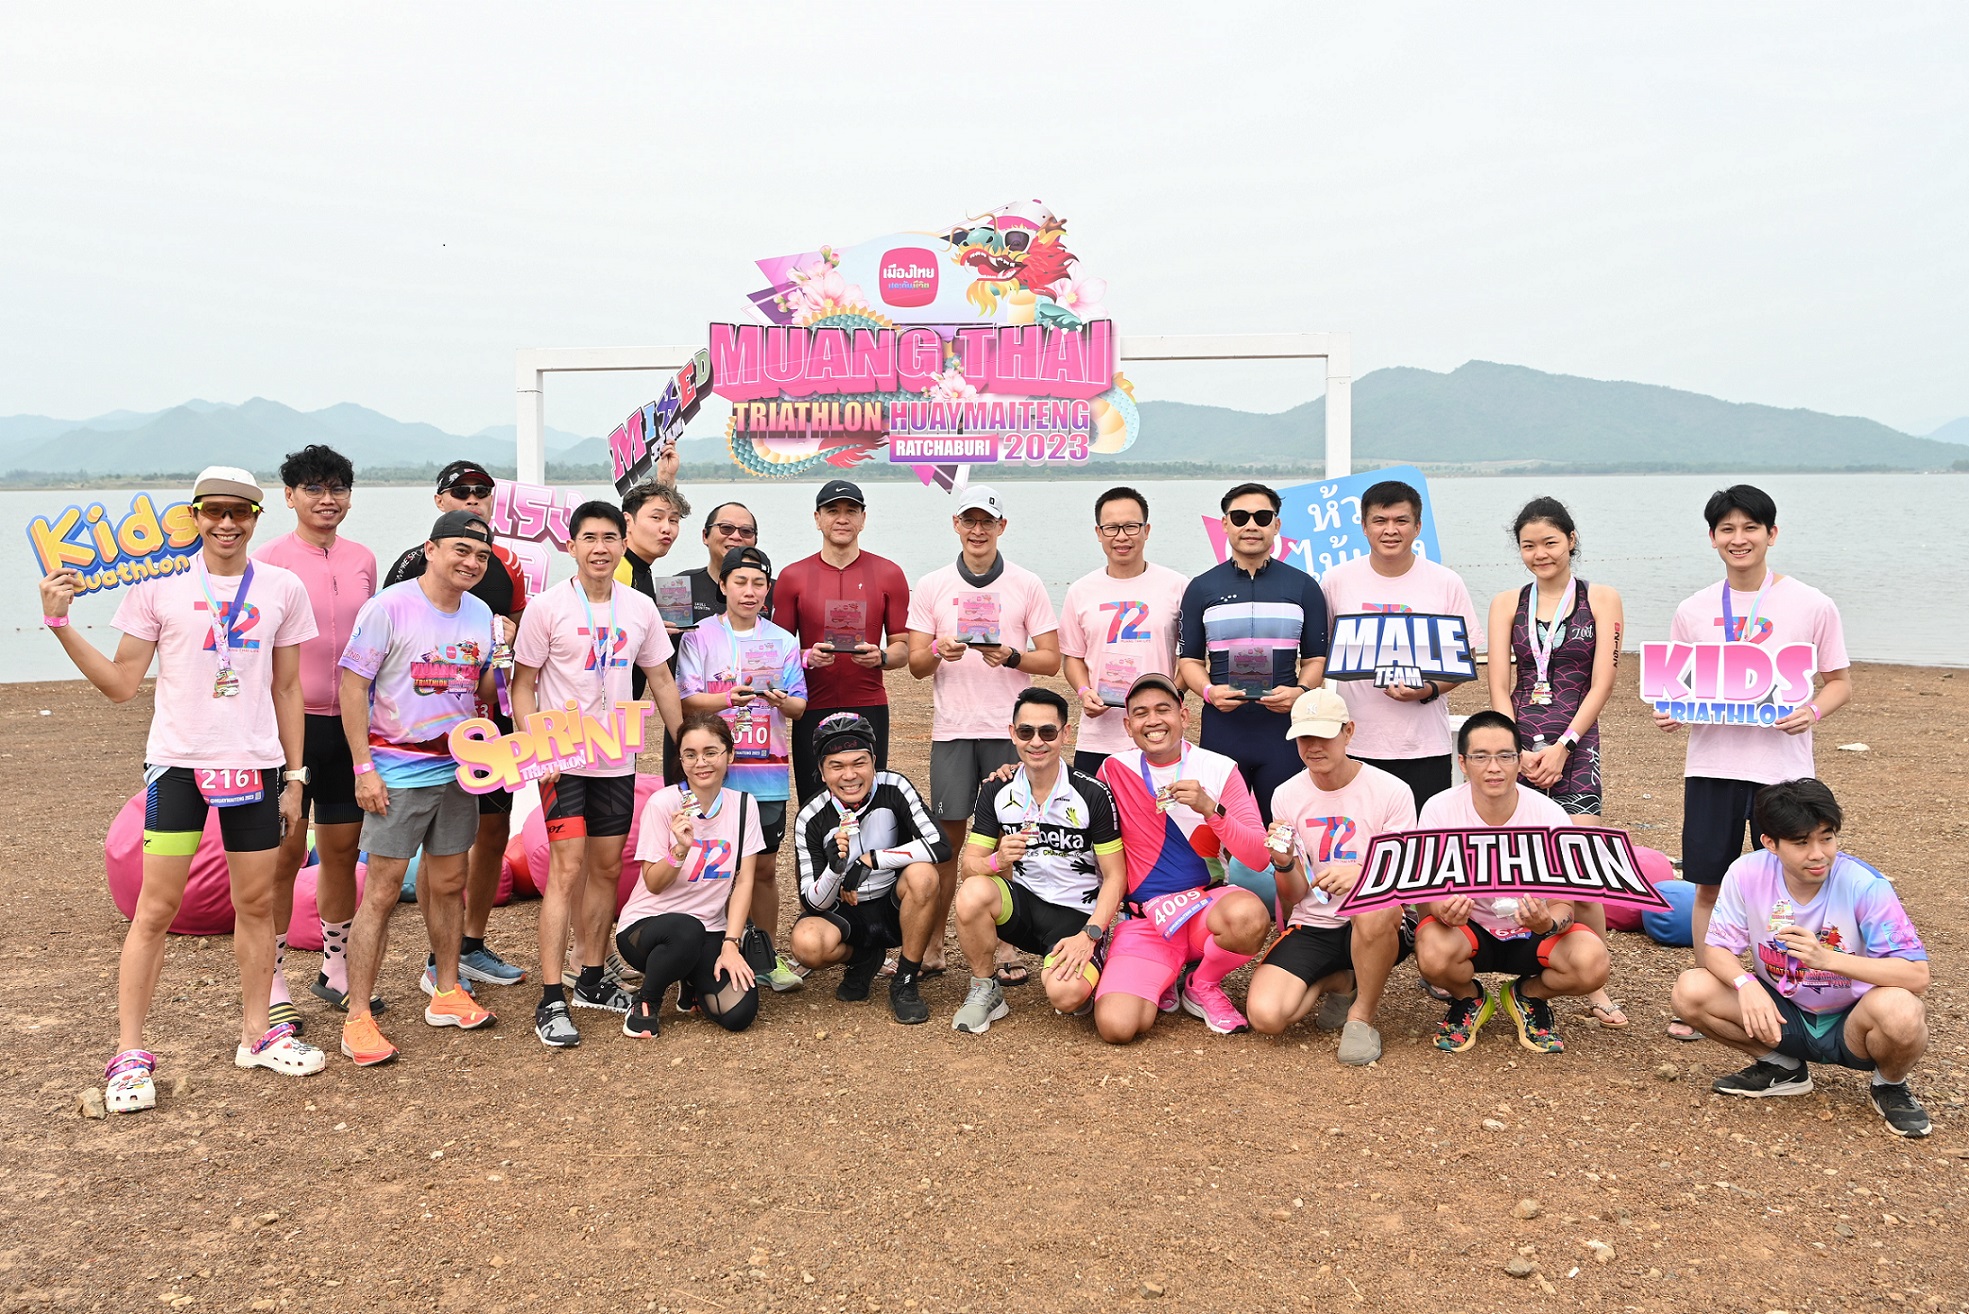 เมืองไทยประกันชีวิต มอบความสุขและรอยยิ้ม จัดการแข่งขัน “เมืองไทยไตรกีฬา @ ห้วยไม้เต็ง ราชบุรี 2023” ตอบโจทย์คนรักสุขภาพ นักกีฬาสายผจญภัย ทั้งชาวไทยและชาวต่างชาติเข้าร่วมแข่งขันอย่างคึกคัก